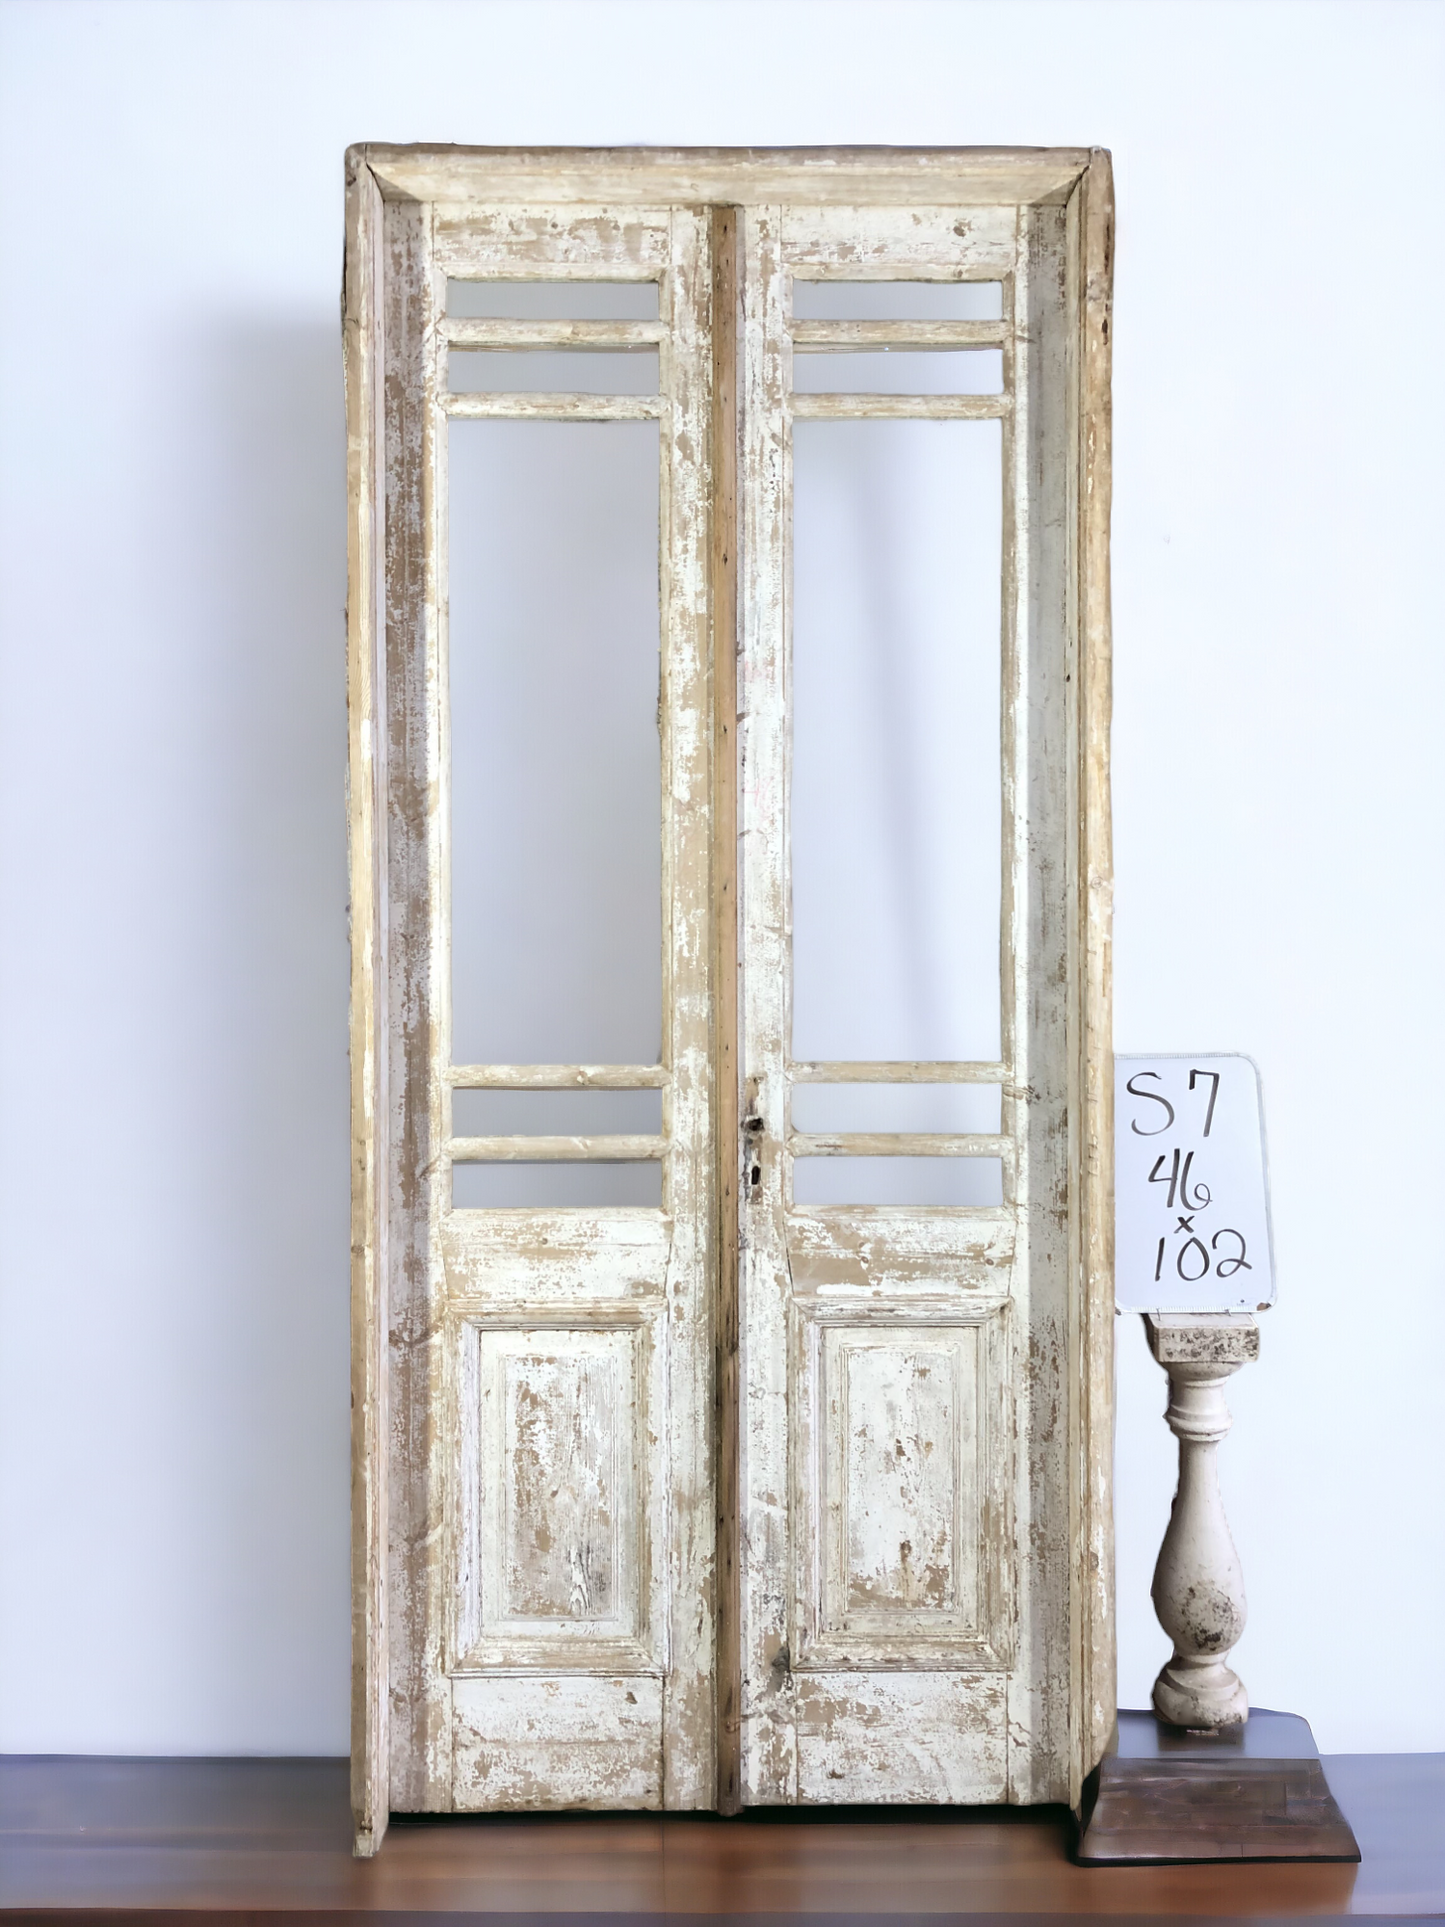 Antique Encased French Double Doors (46x102) 5 Pane Glass European Door Jamb S7